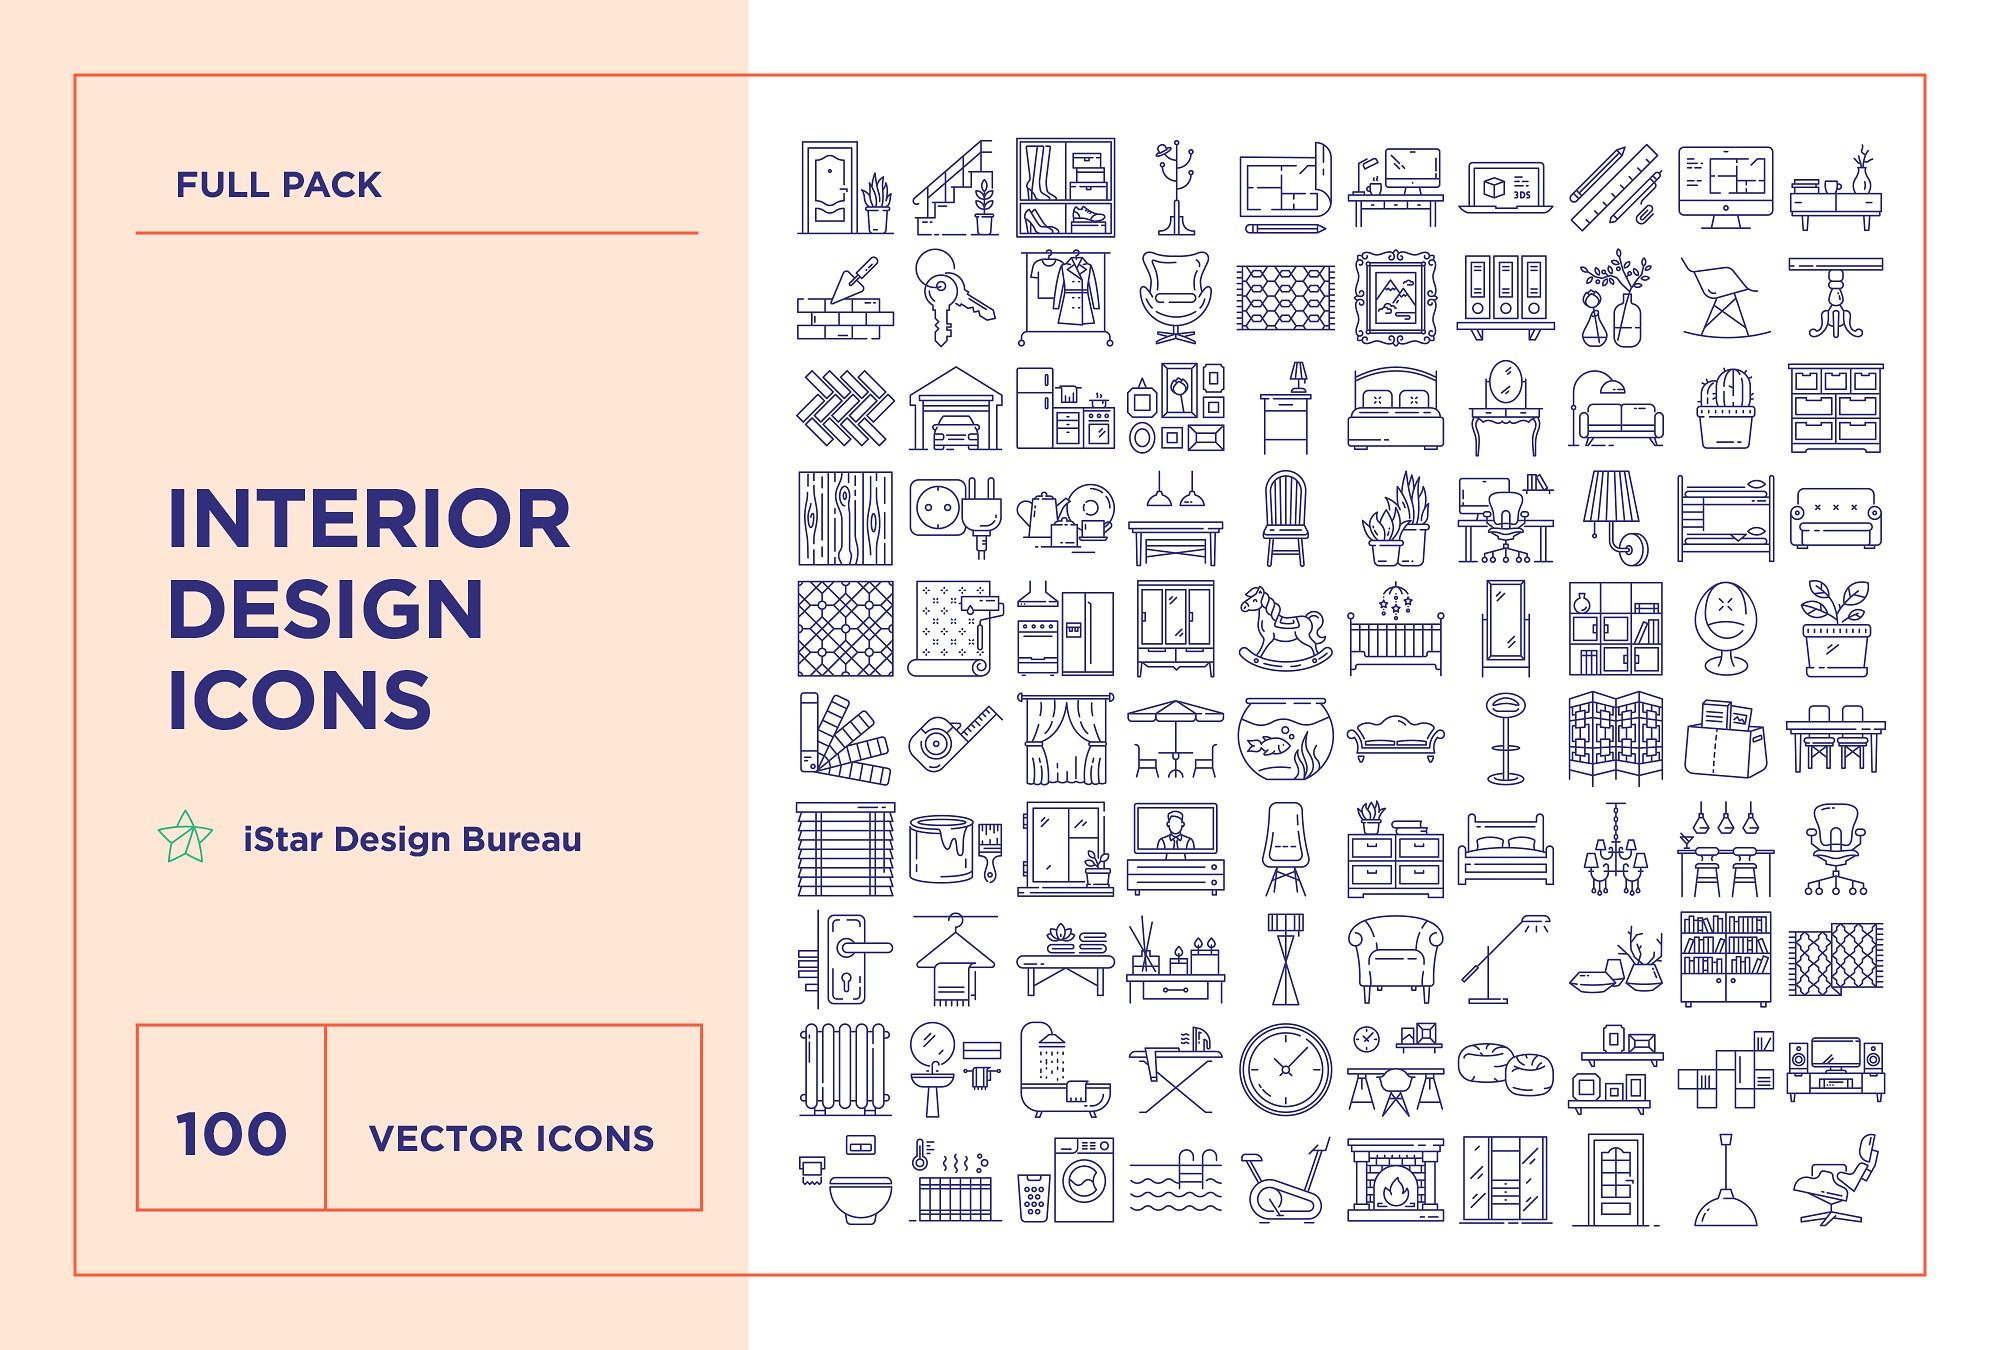 100个独特的室内设计类线形图标合辑下载[ai,eps,pdf,svg]插图(2)